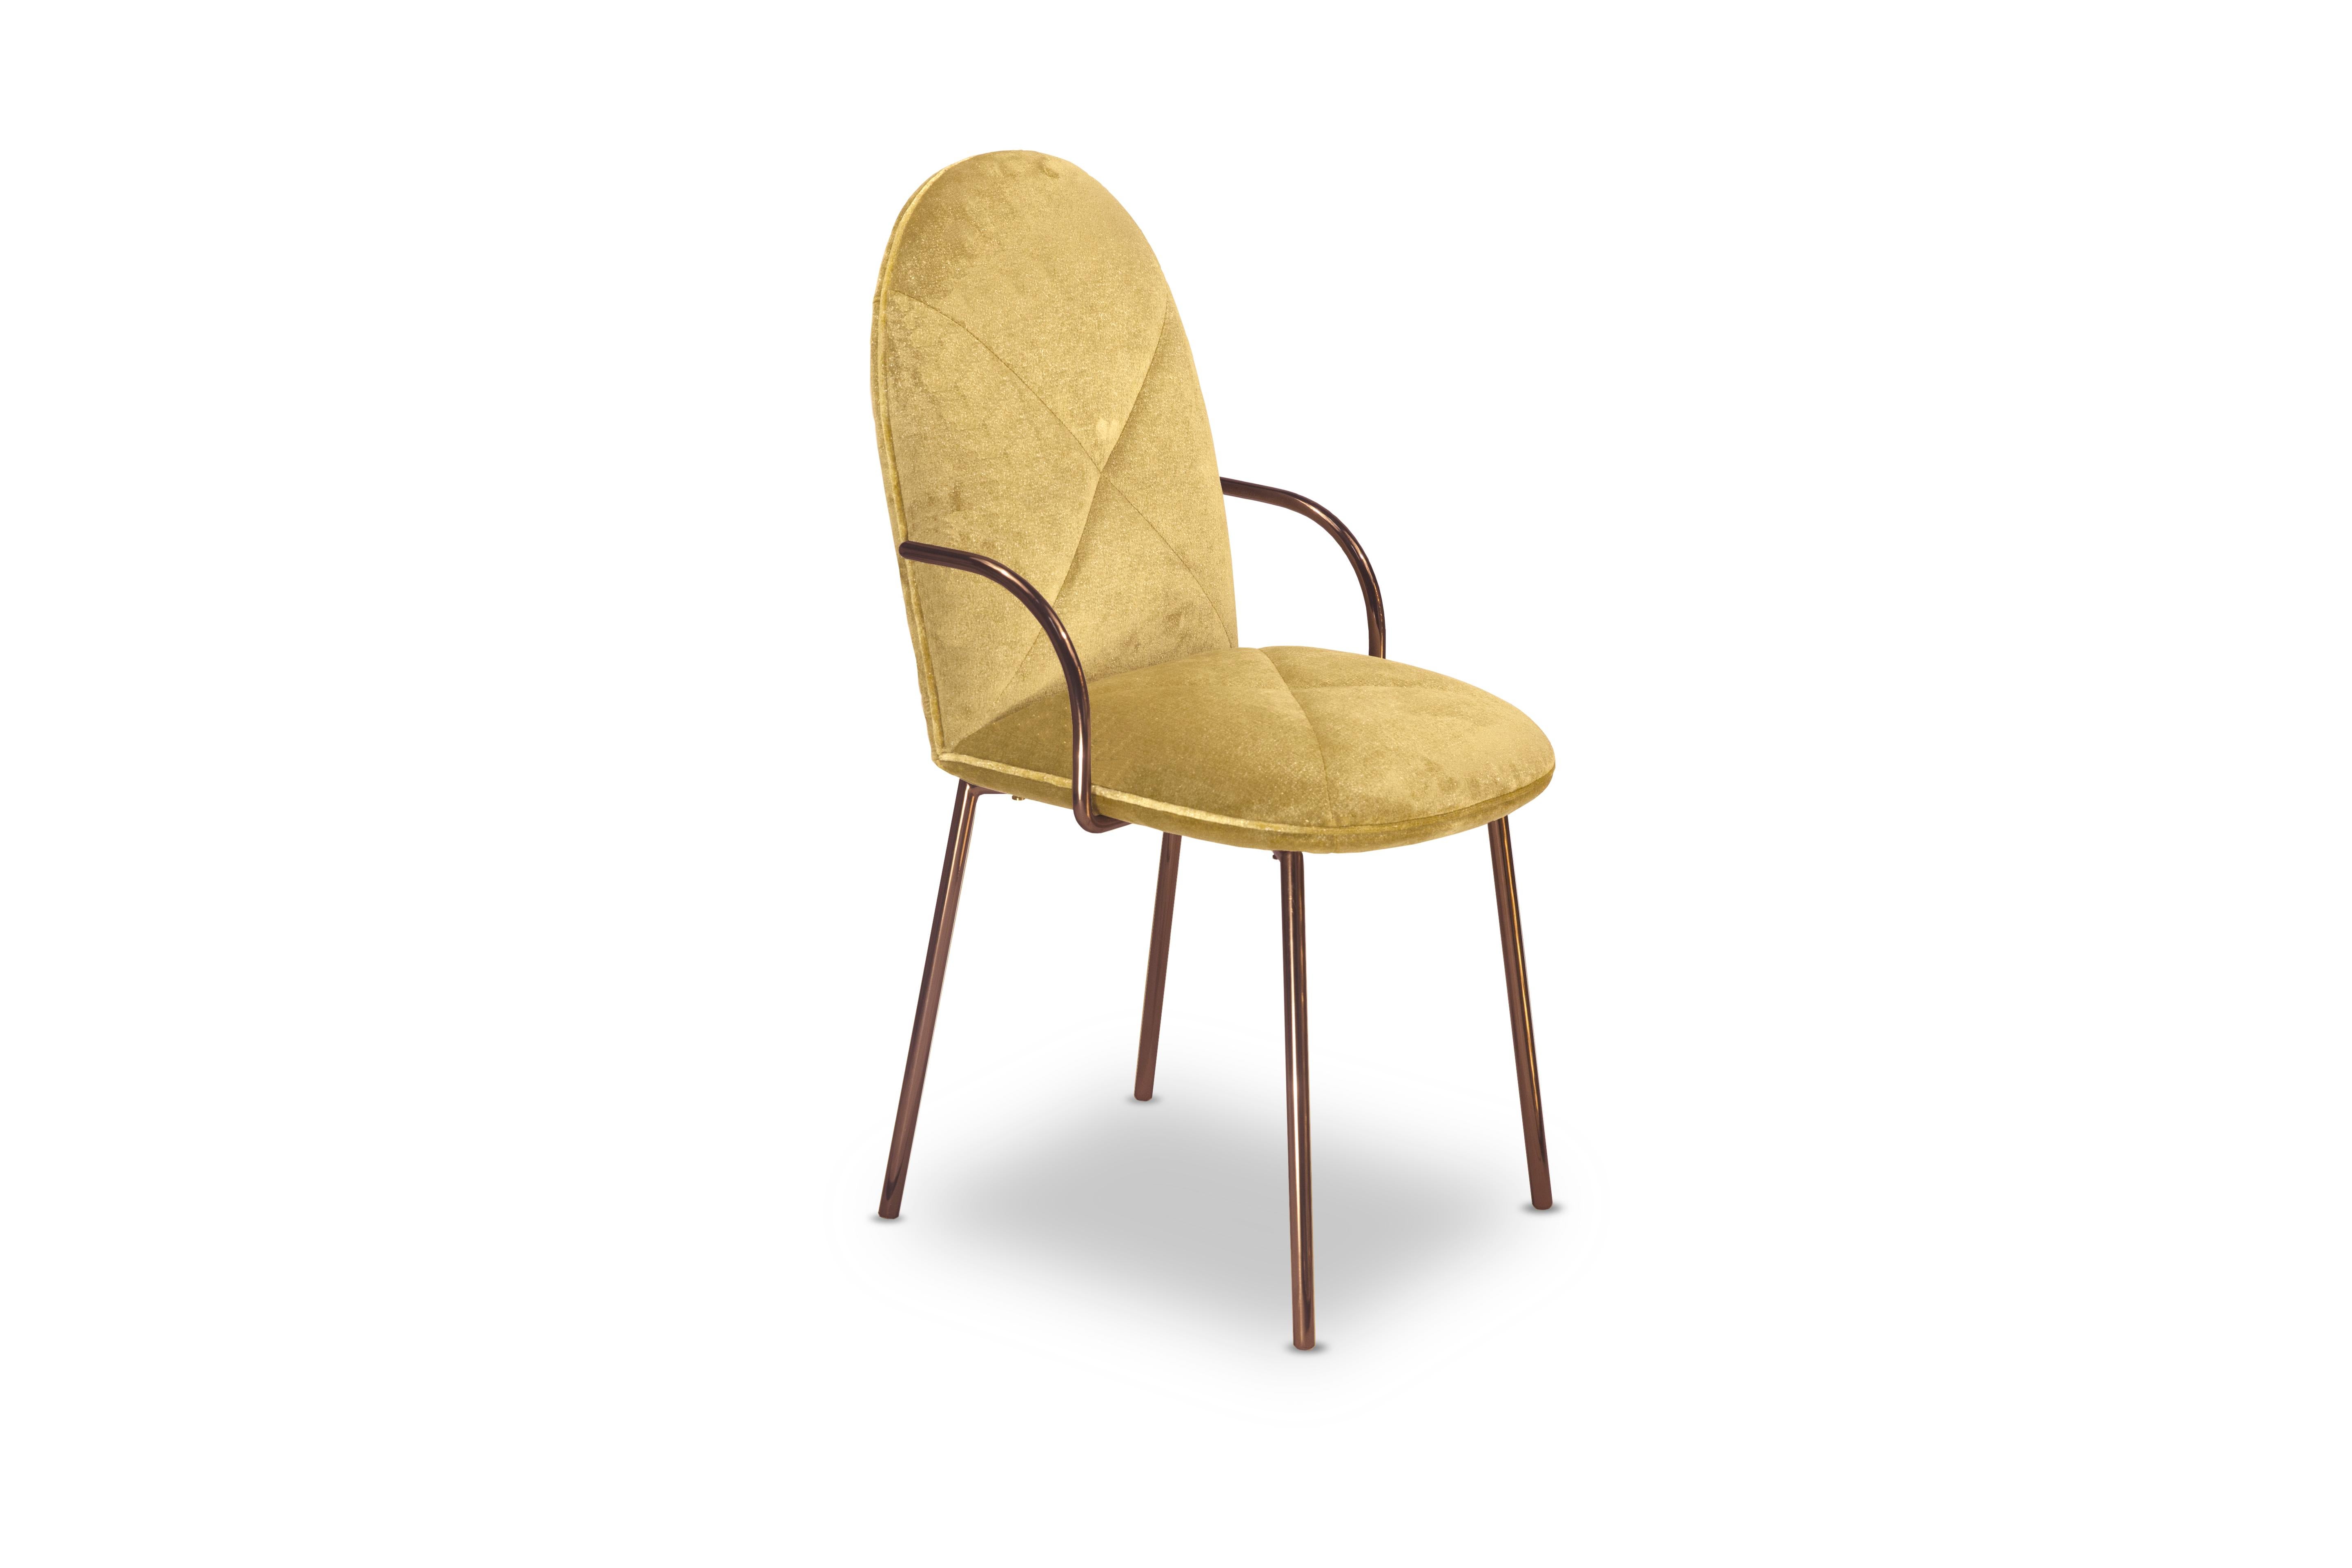 Orion Dining Chair with Gold Dedar Velvet and Rose Gold Arms von Nika Zupanc ist ein wunderschöner Stuhl mit opulentem goldenem Stoff von Dedar Milano und roségoldenen Metallarmen.

Nika Zupanc, eine auffallend renommierte slowenische Designerin,